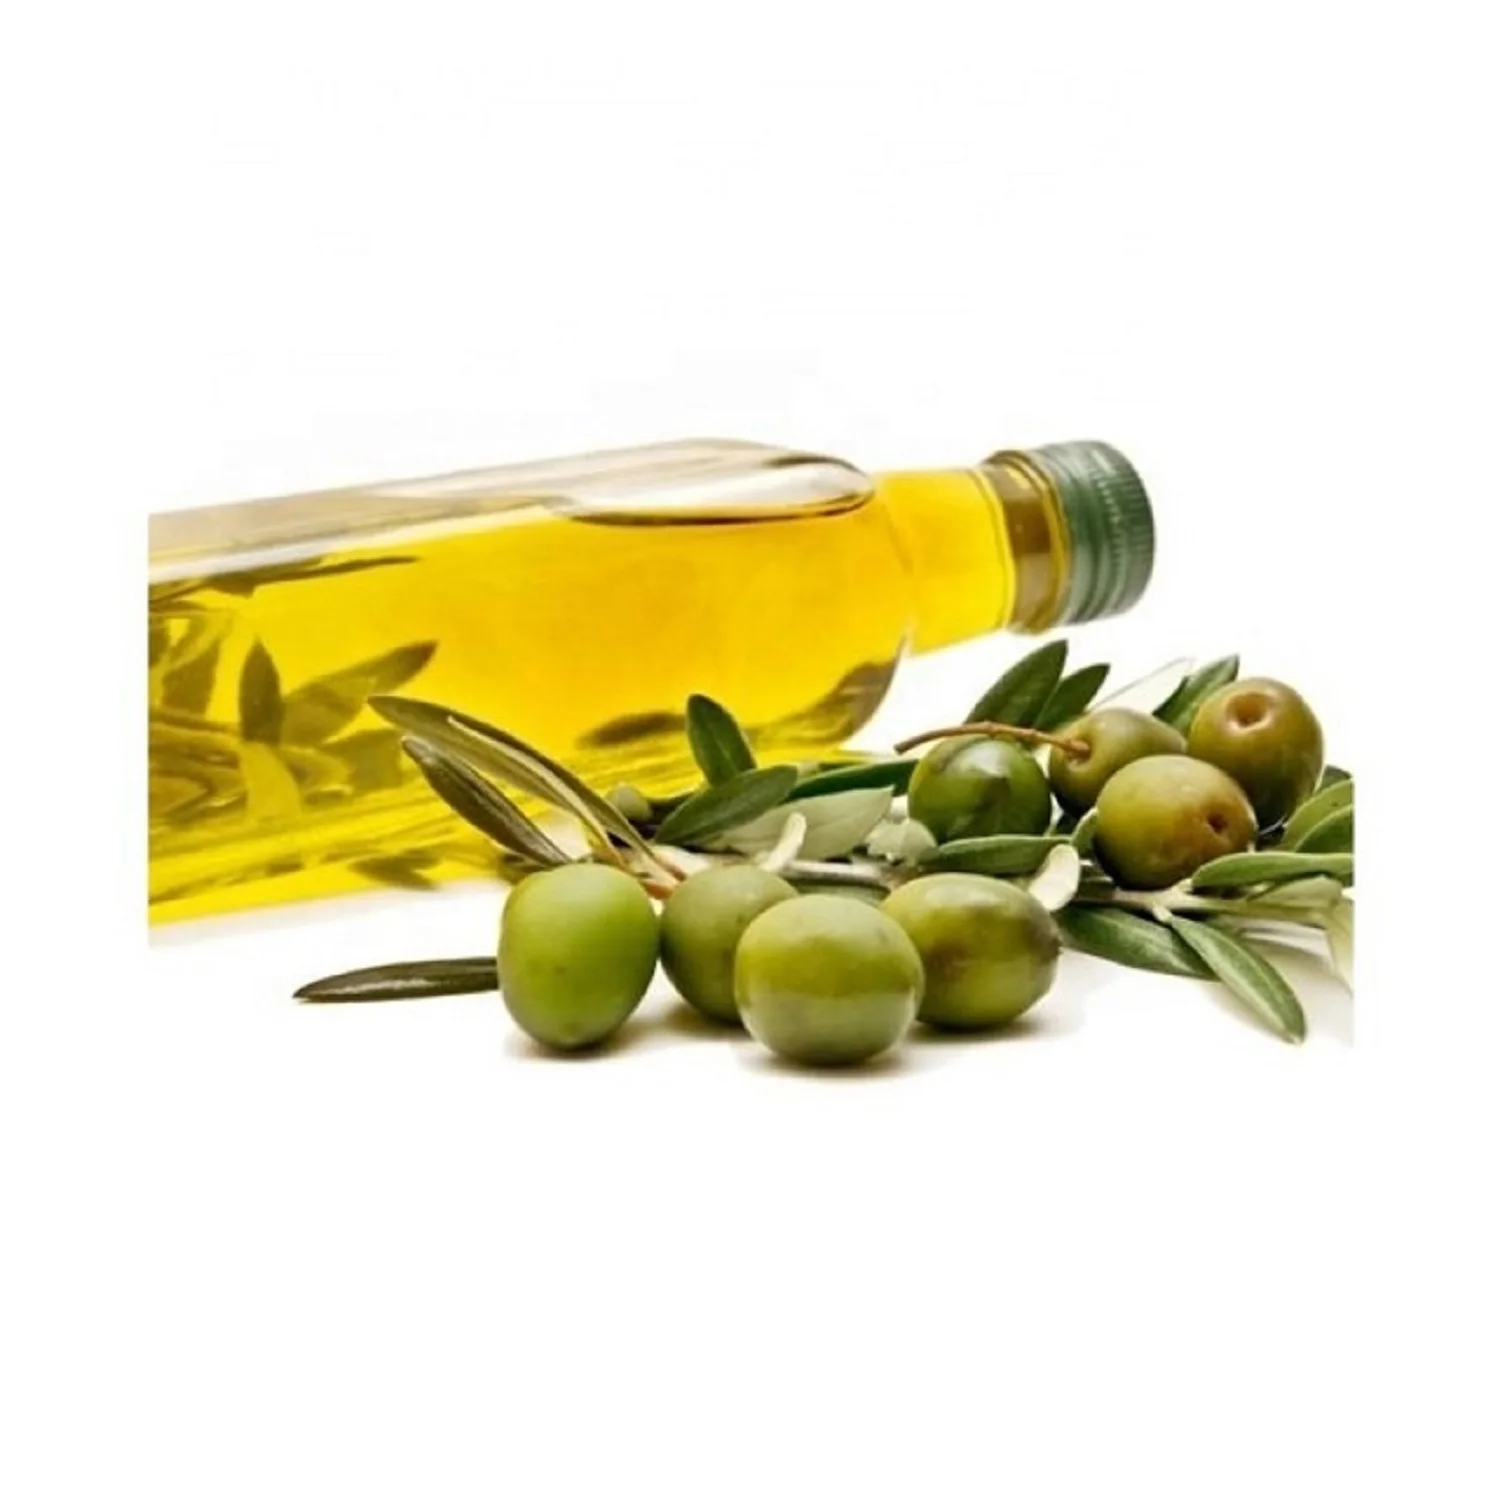 Продам оливковое масло. Оливковое масло. Оливки масло. Оливки на белом фоне. Оливки и оливковое масло.